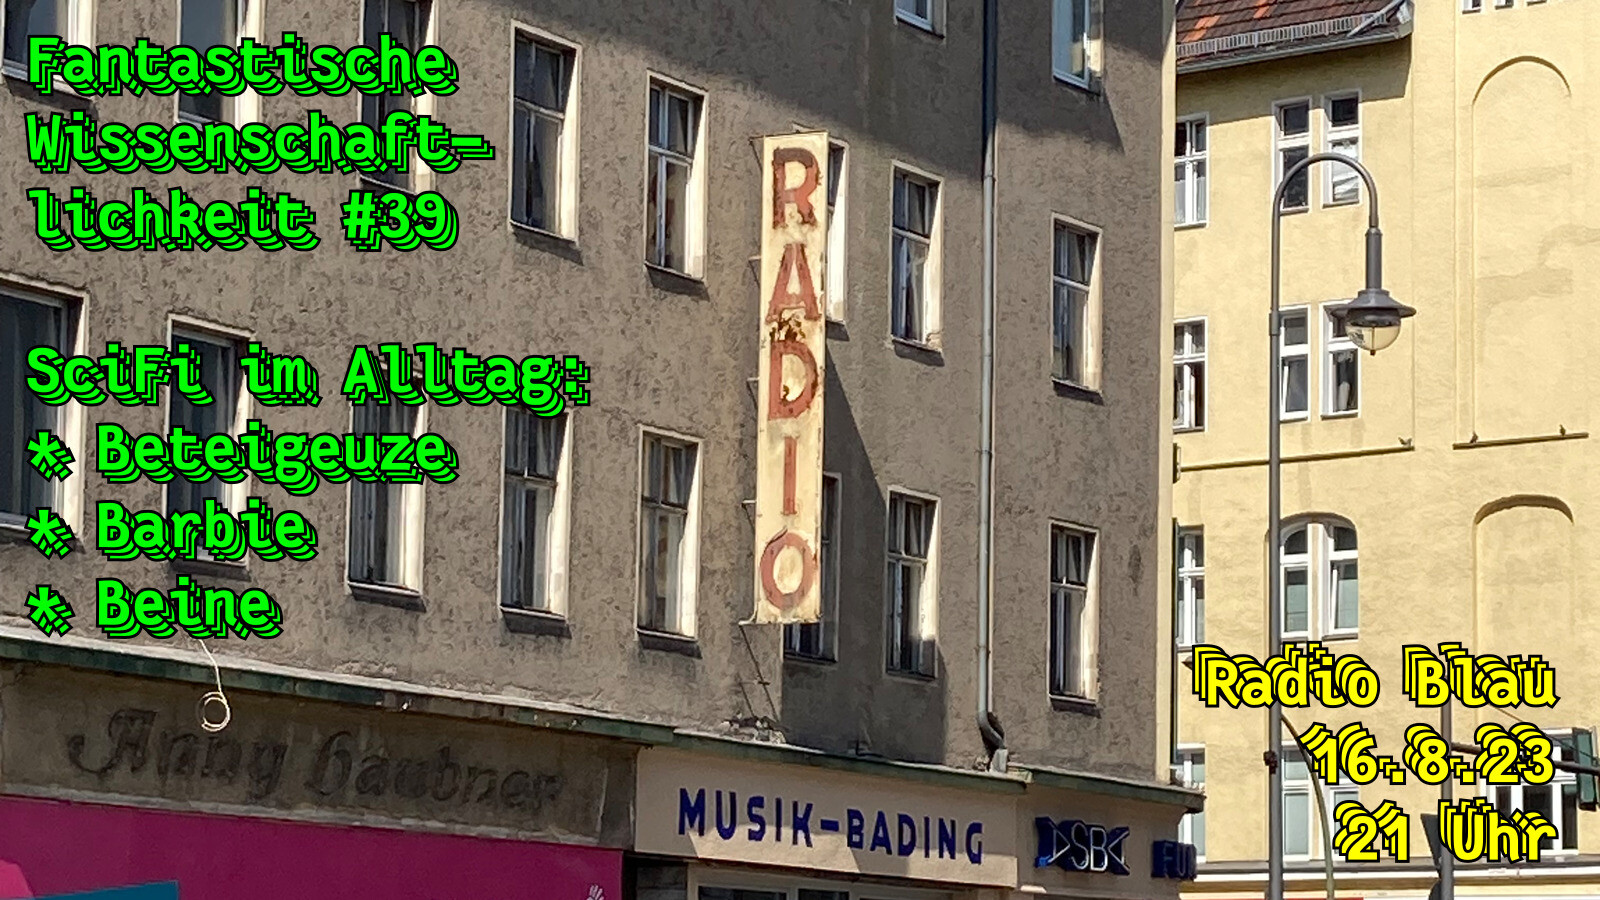 Flyer für Fantastische Wissenschaftliche #39. Text: "SciFi im Alltag: Beteigeuze, Barbie, Beine. Radio Blau 16.8.23, 21 Uhr." Hintergrundbild: verwittertes Schild mit der Aufschrift "Radio" über einem Berliner Musikgeschäft.